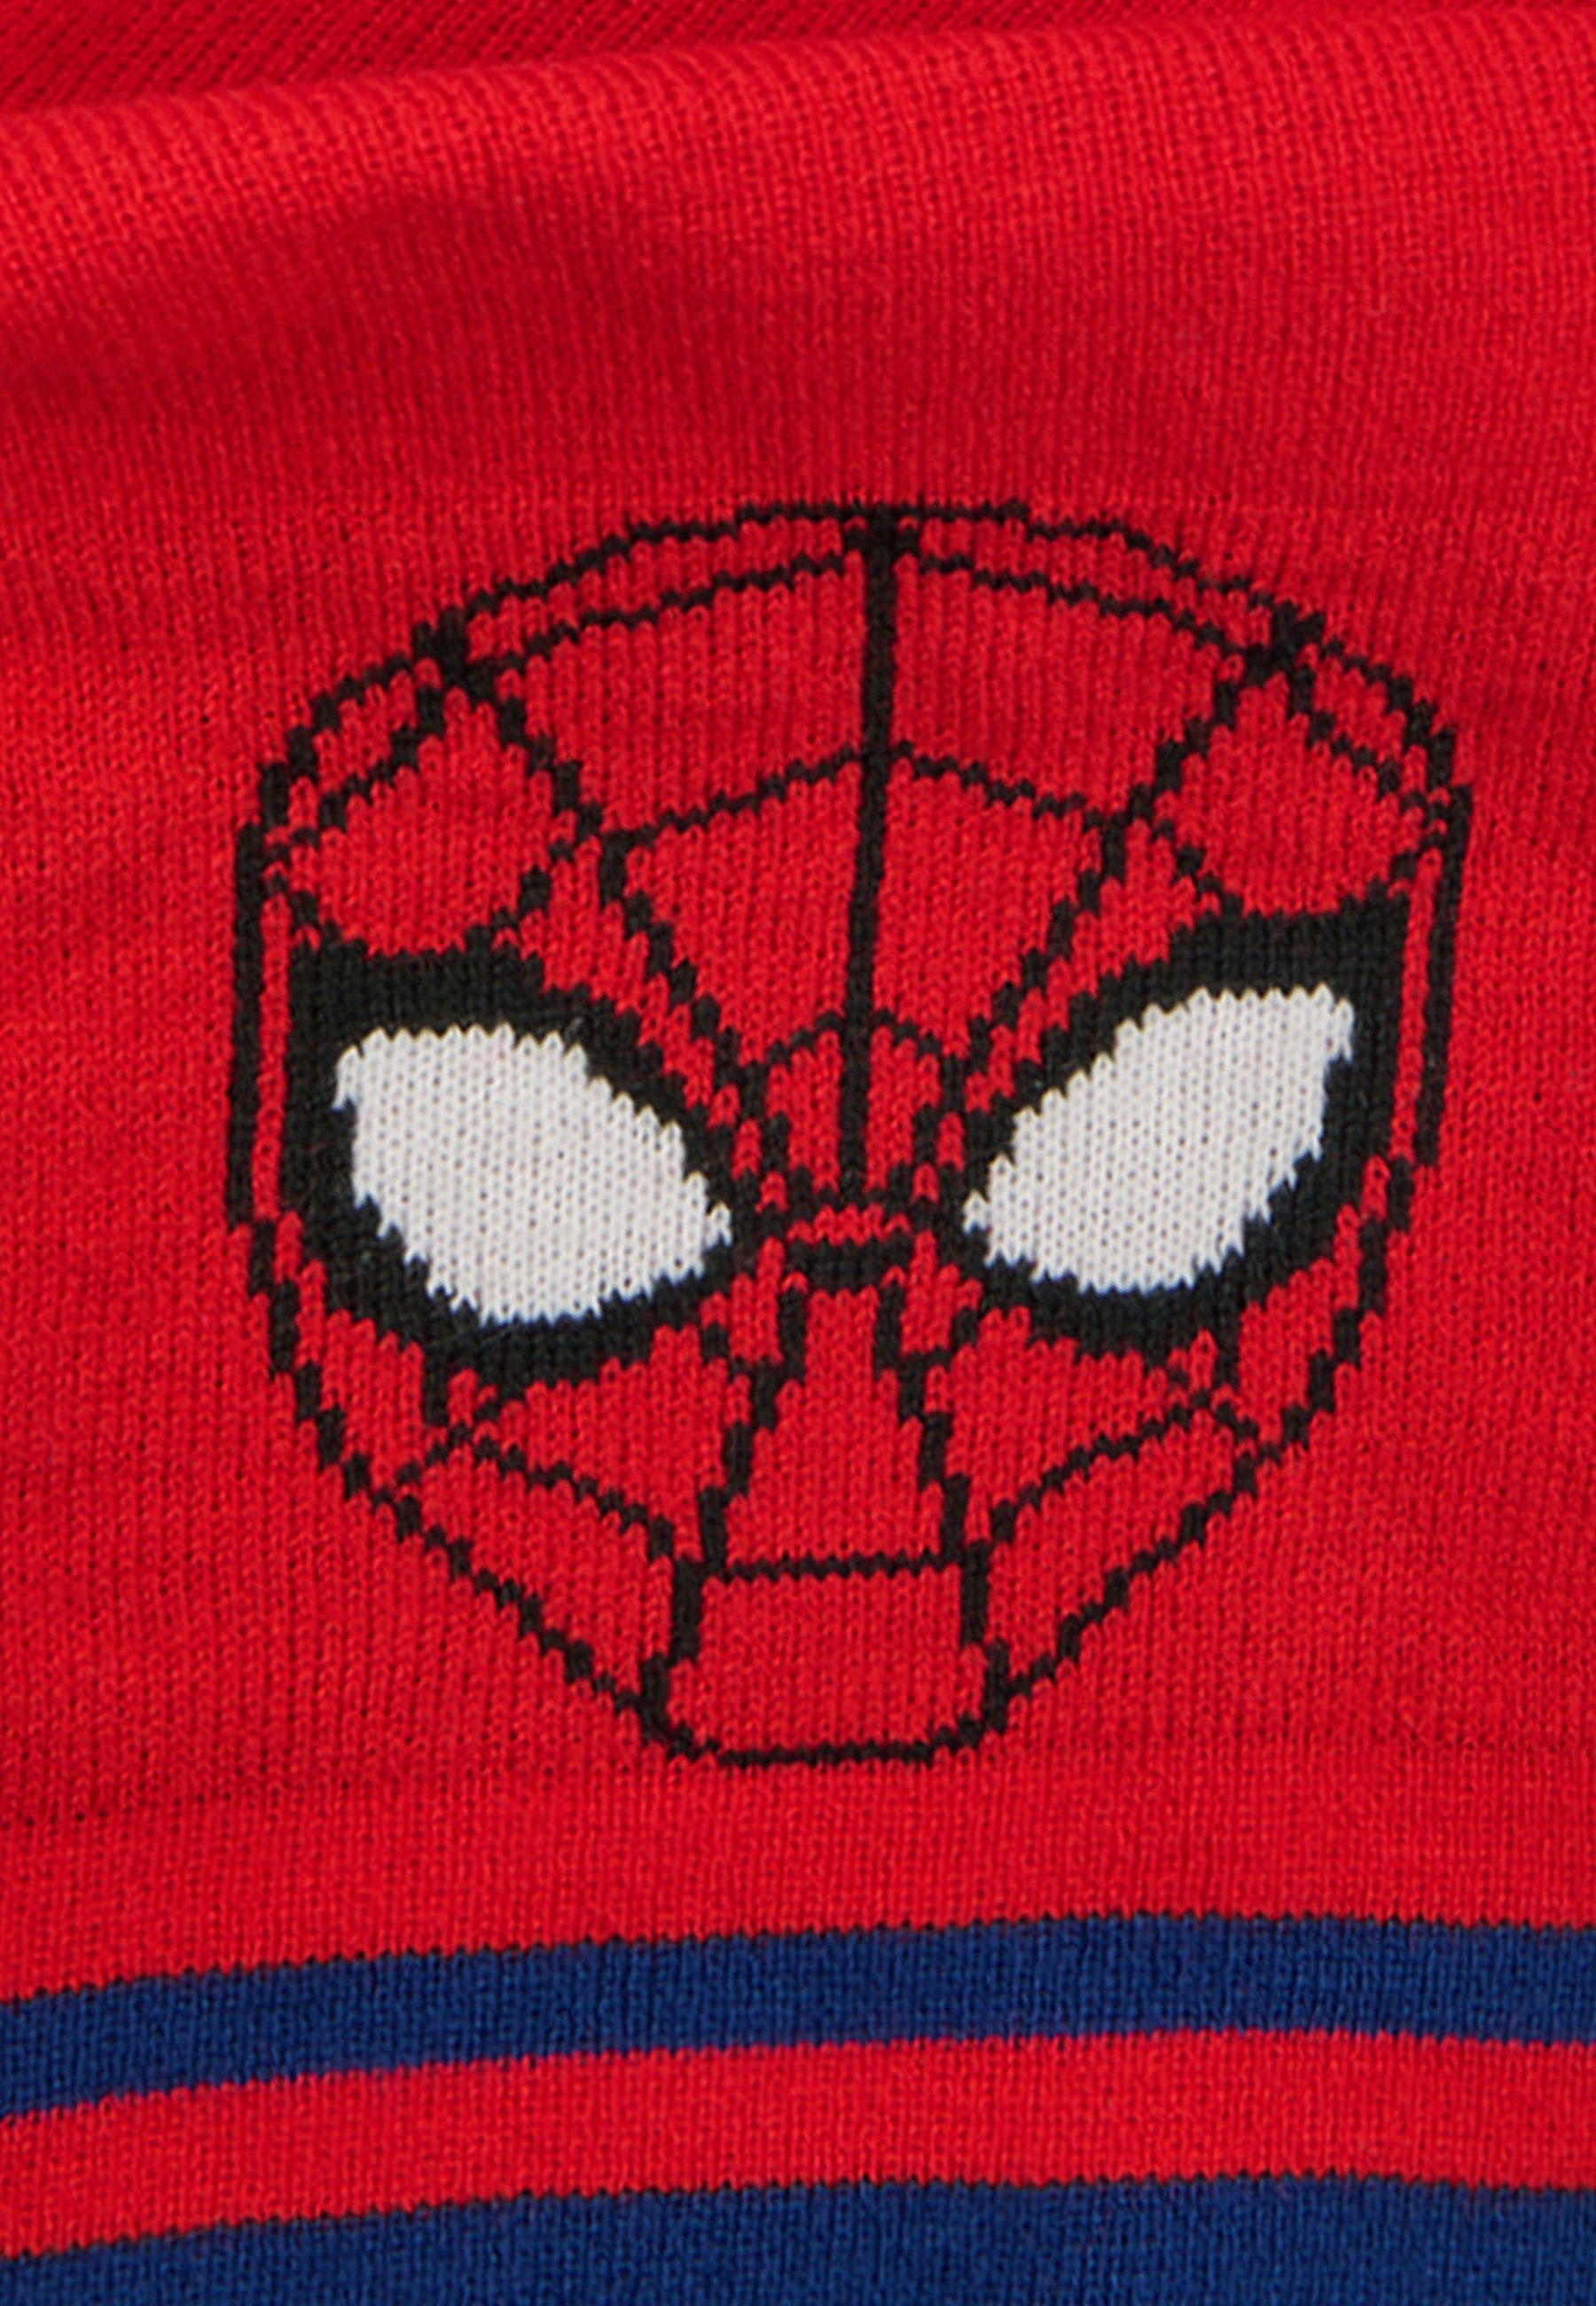 ONOMATO! Strickschal Jungen Spider-Man Kinder Winter-Schal